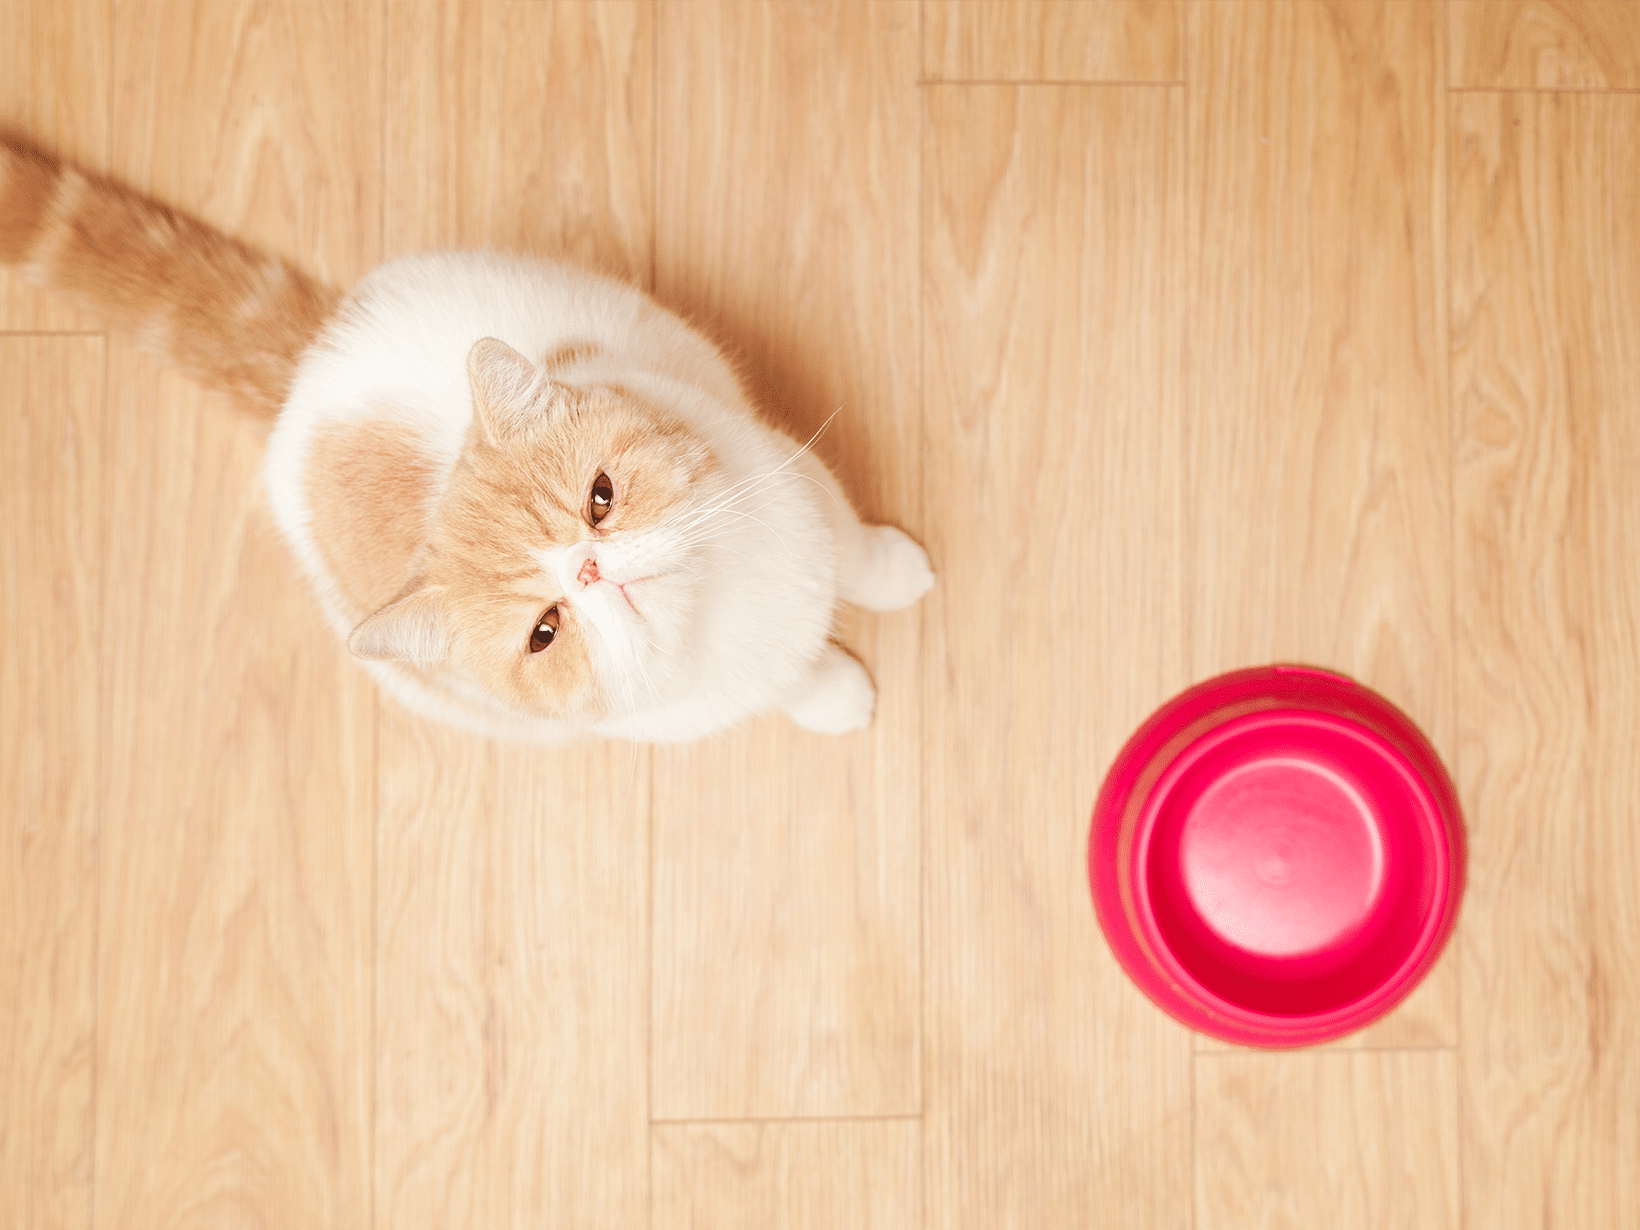 Hoe lang mag een kat niet eten voor een sterilisatie?